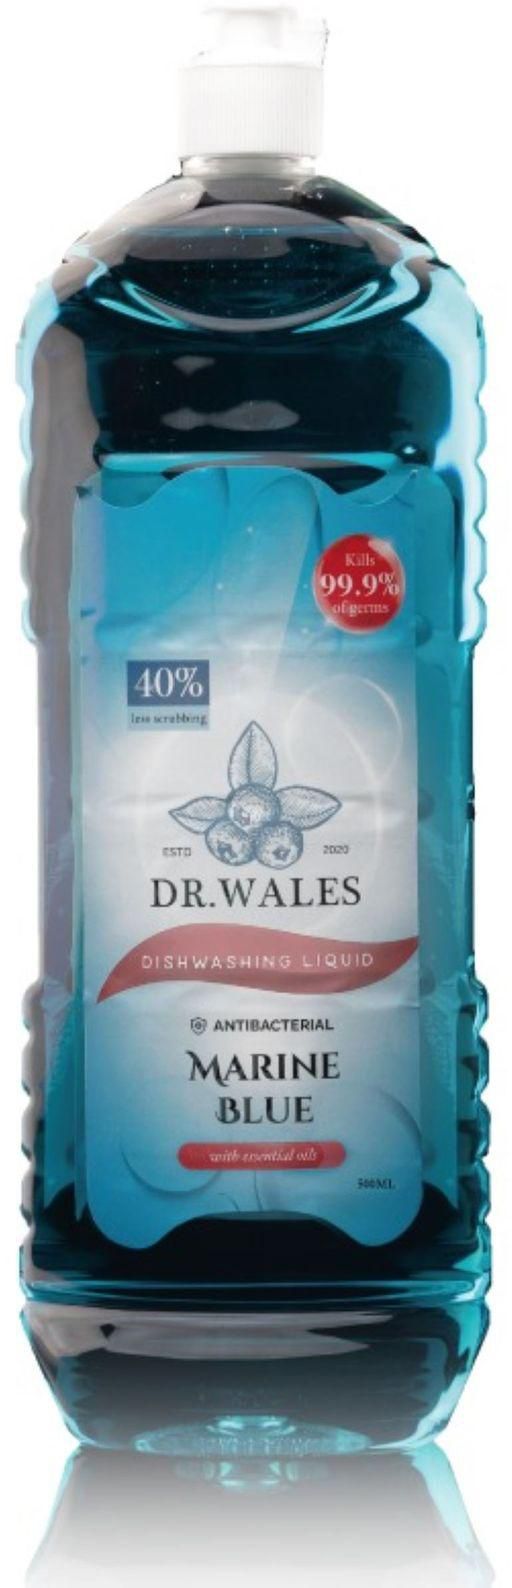 DR. WALES Dishwashing Liquid Detergent- Marine Blue 500ml